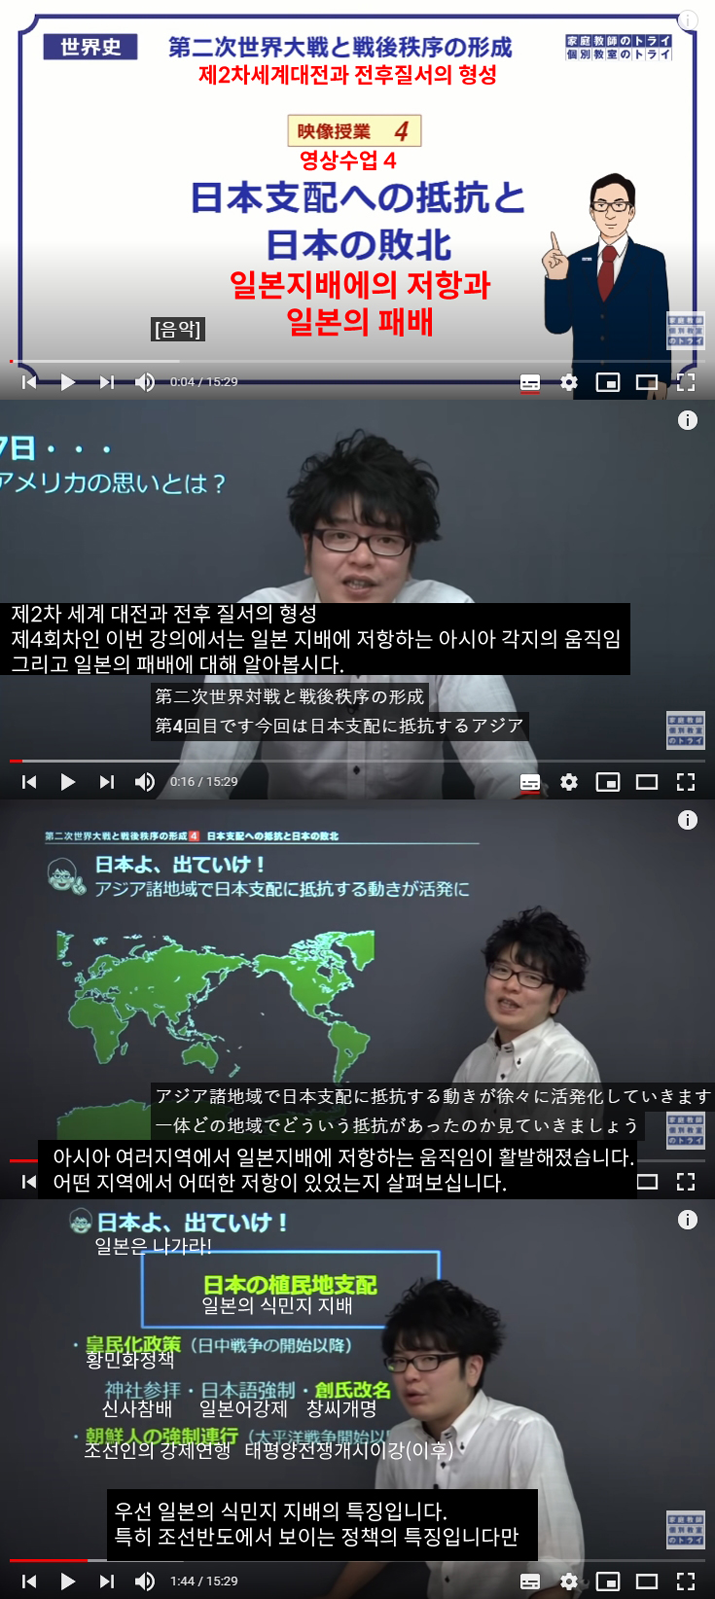 일본의 인터넷 역사강의